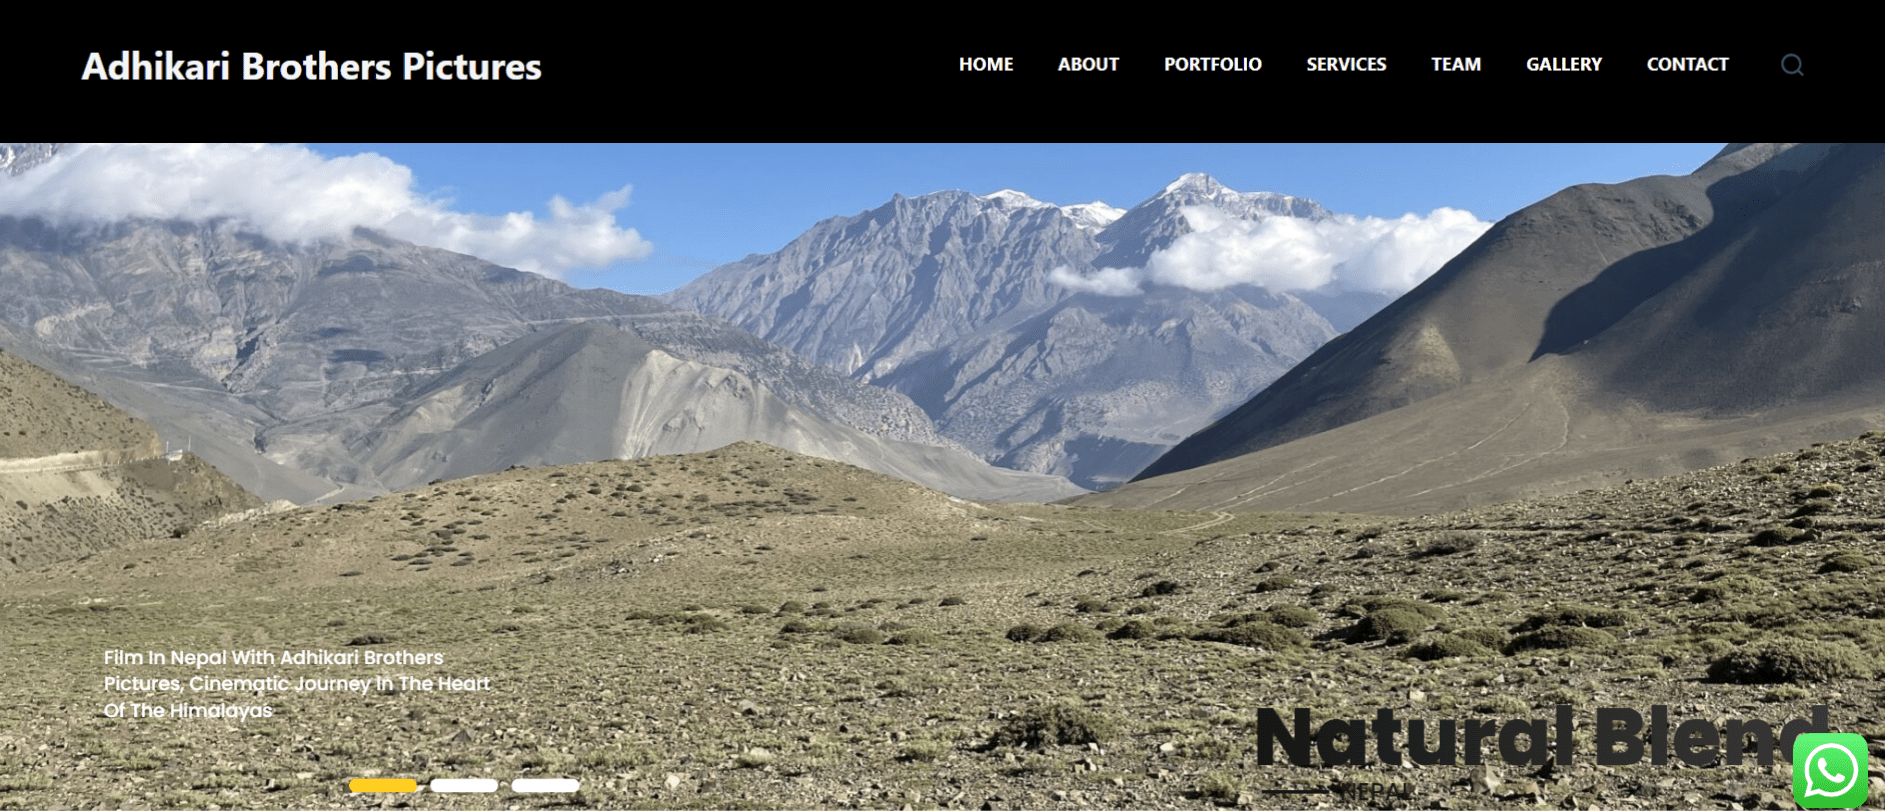 Nepal Websites portfolio Adhikari Brothers Pictures